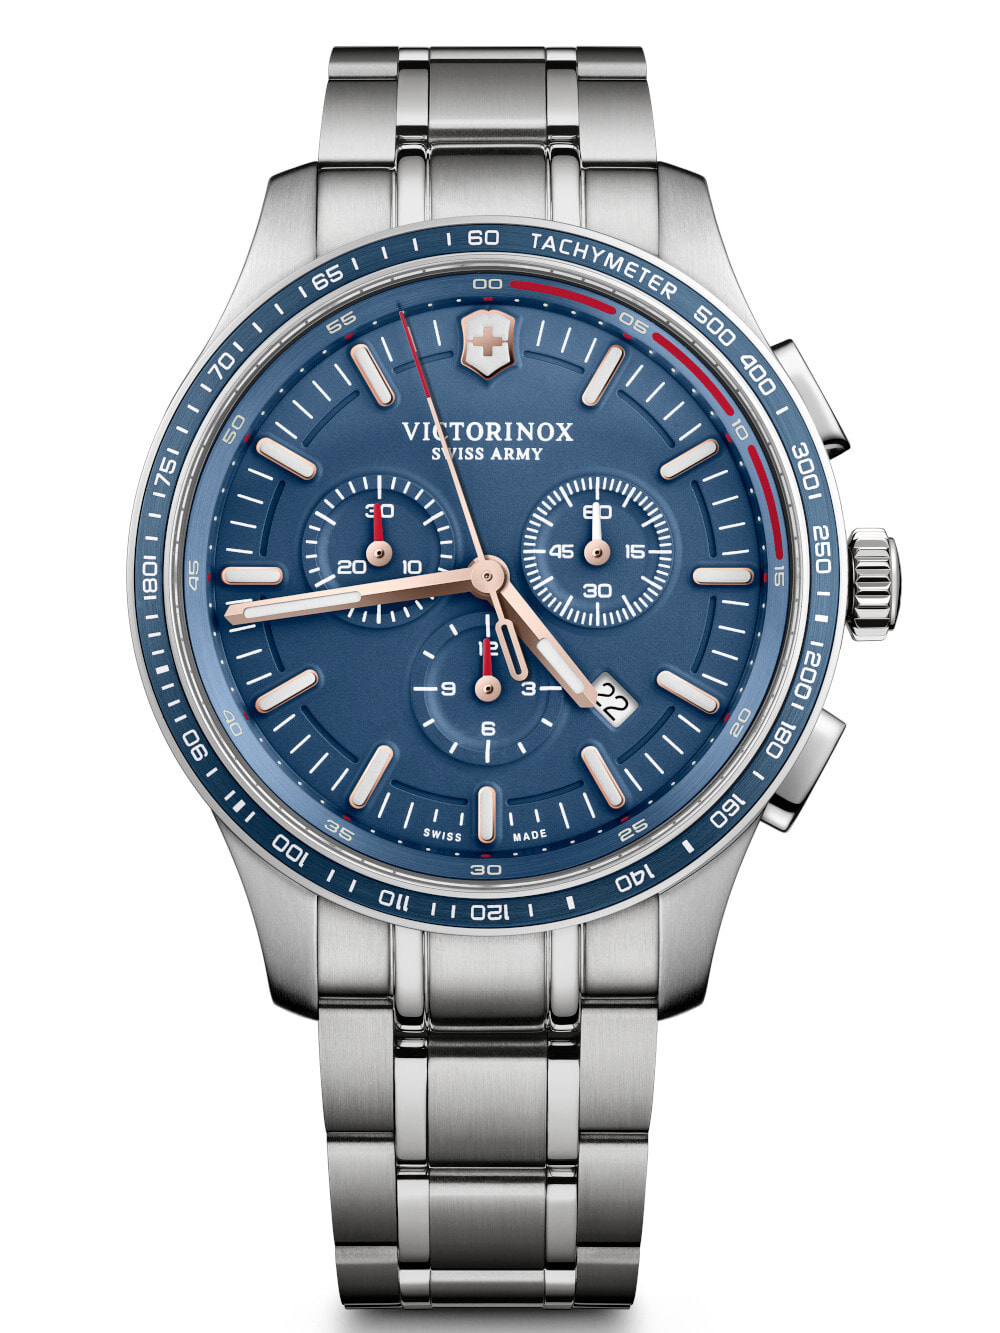 Мужские наручные часы с серебристым браслетом Victorinox 241817 Alliance Sport Chronograph 44mm 10ATM